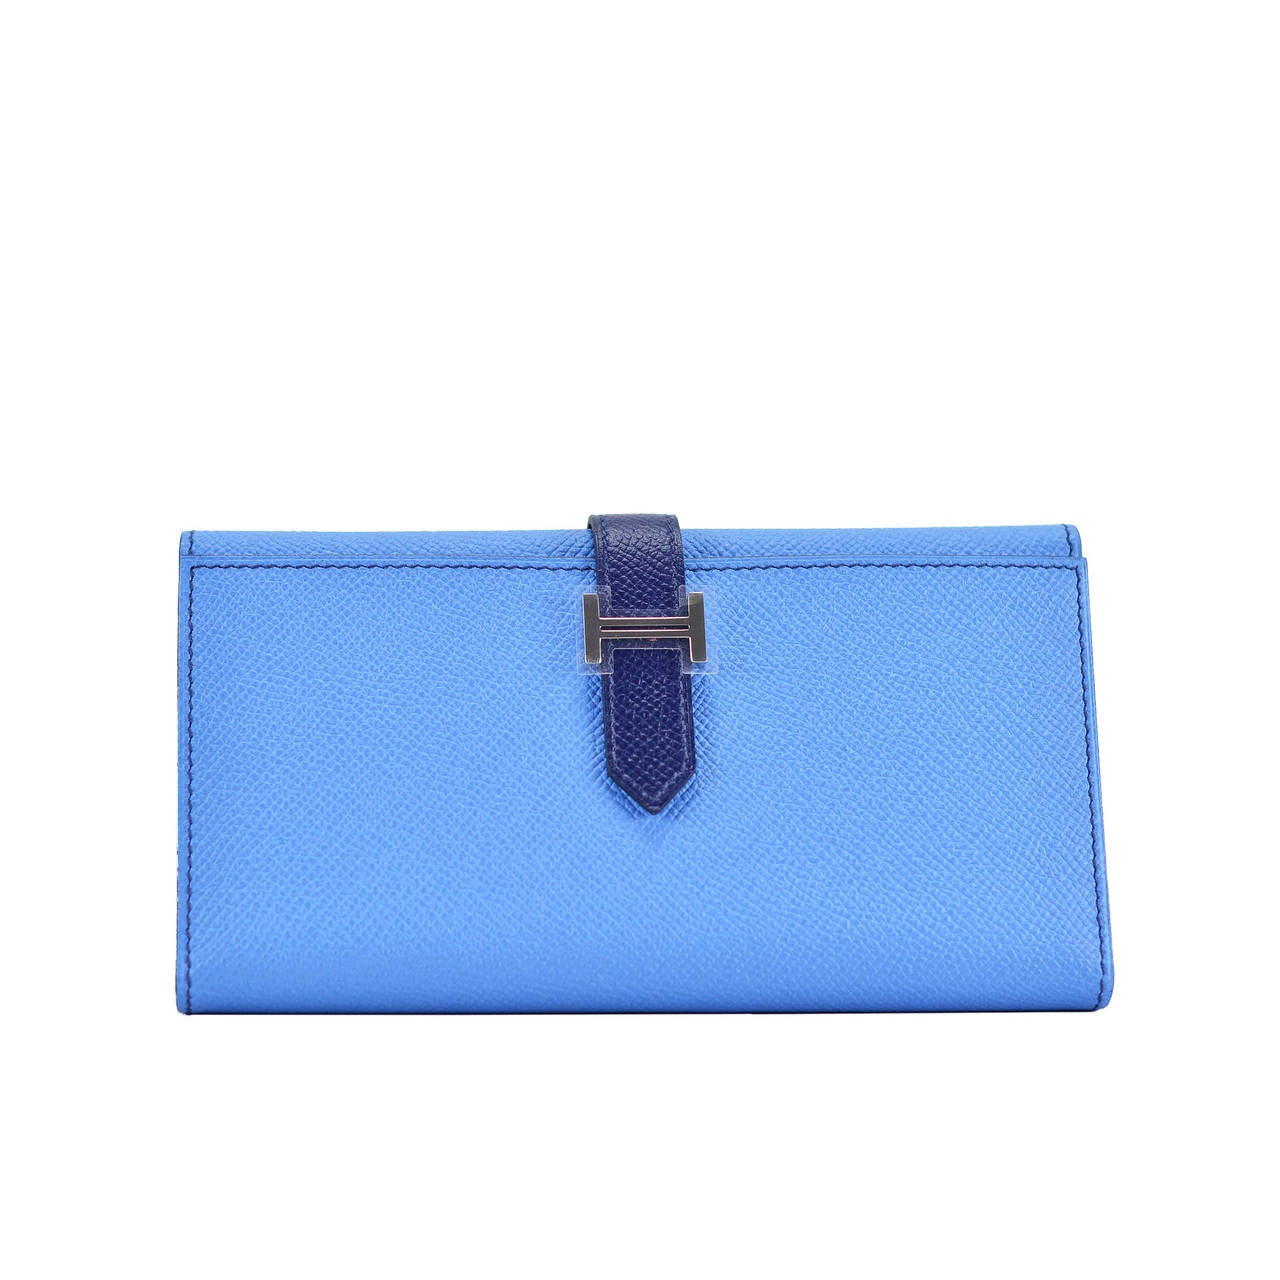 Hermes Wallet BEARN EPSOM BLUE  Palladium Hardware 2015.